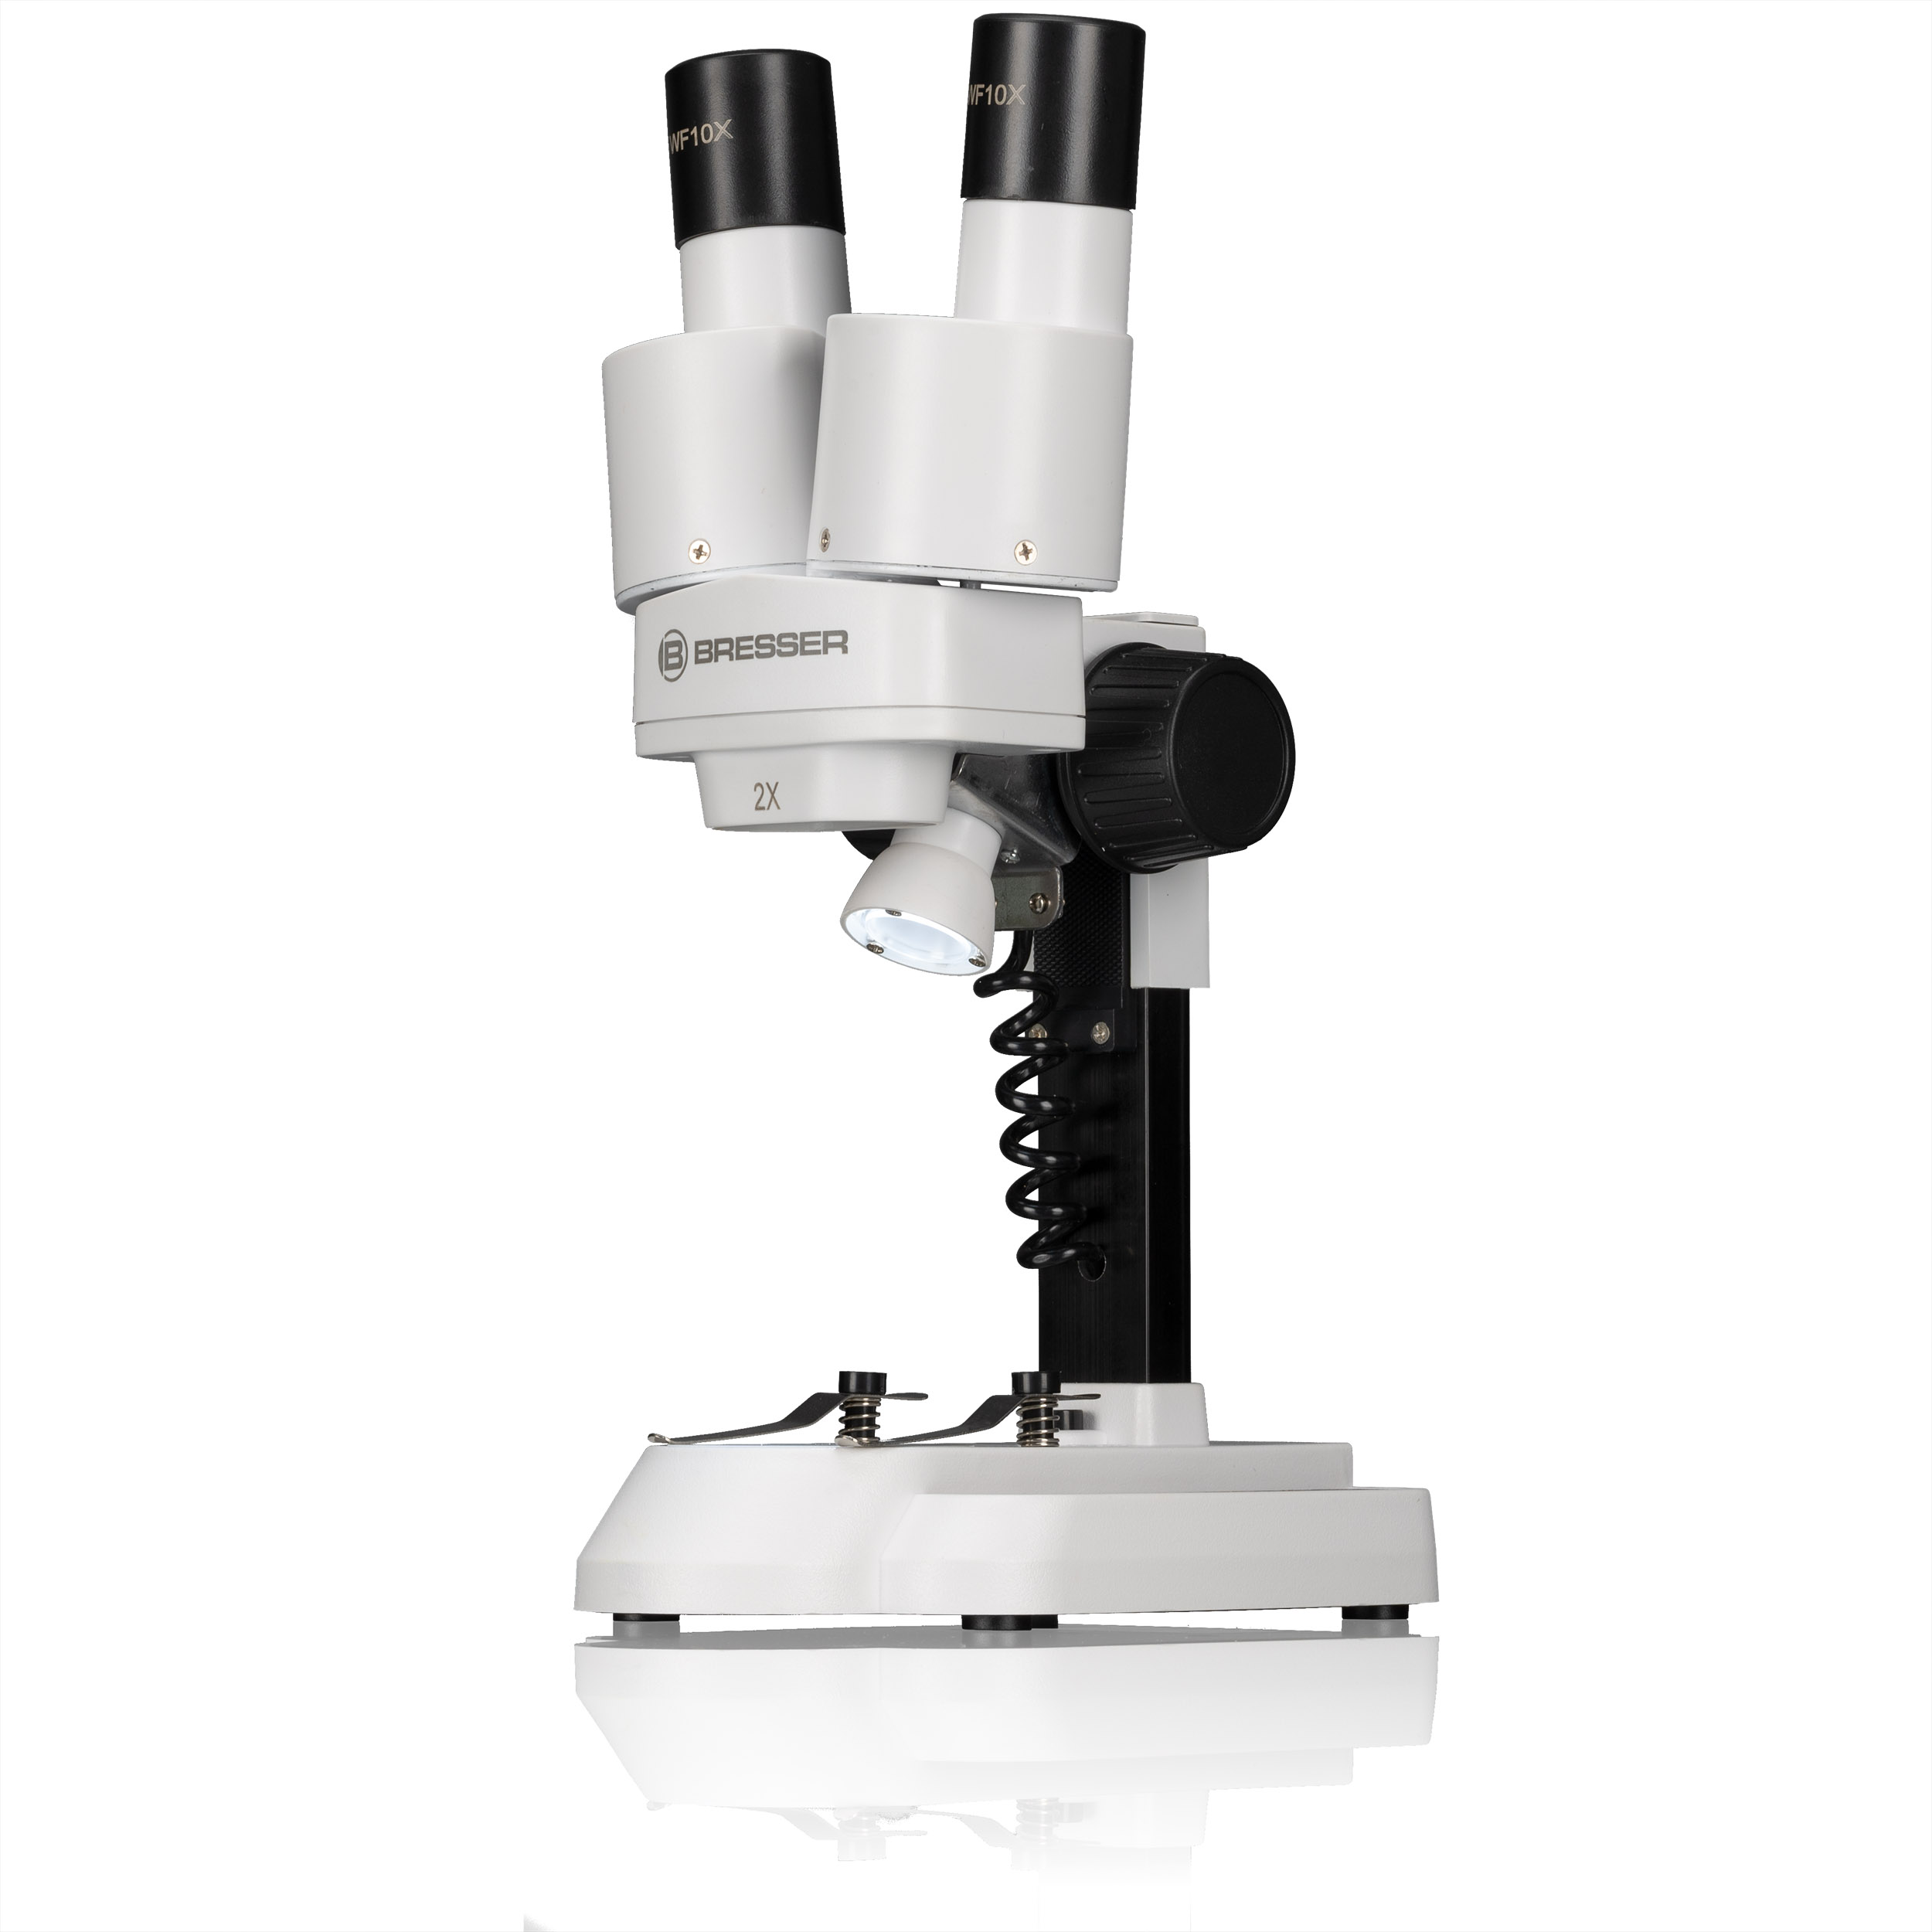 BRESSER JUNIOR 20x Stereo Microscope